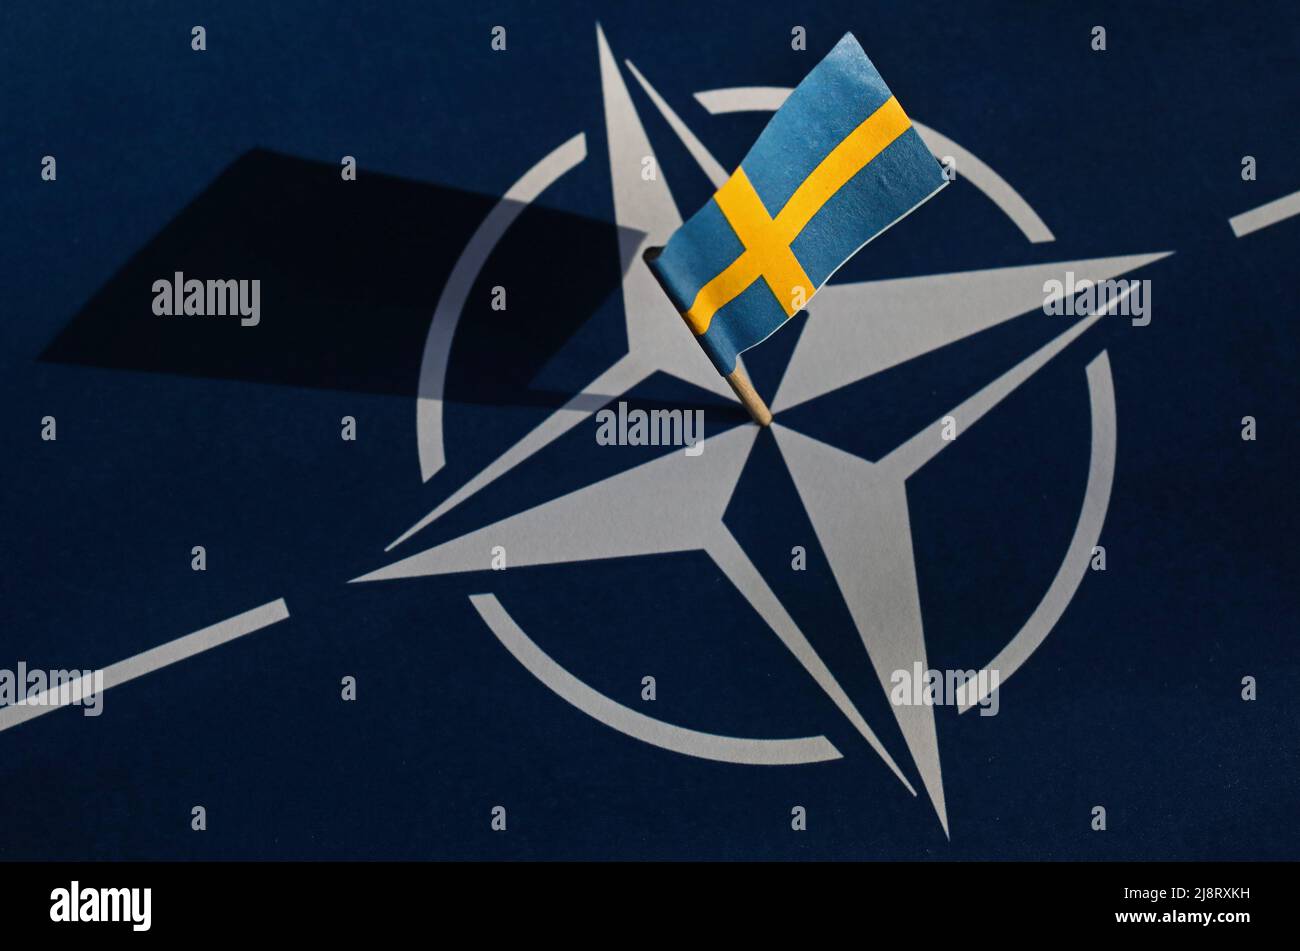 Die Führer Finnlands und Schwedens haben ihre Absicht bestätigt, der NATO beizutreten, was einen historischen nordischen Politikwechsel bedeutet, der durch die russische Invasion in der Ukraine ausgelöst wurde und die Sicherheitskarte Europas neu zeichnen wird. Stockfoto